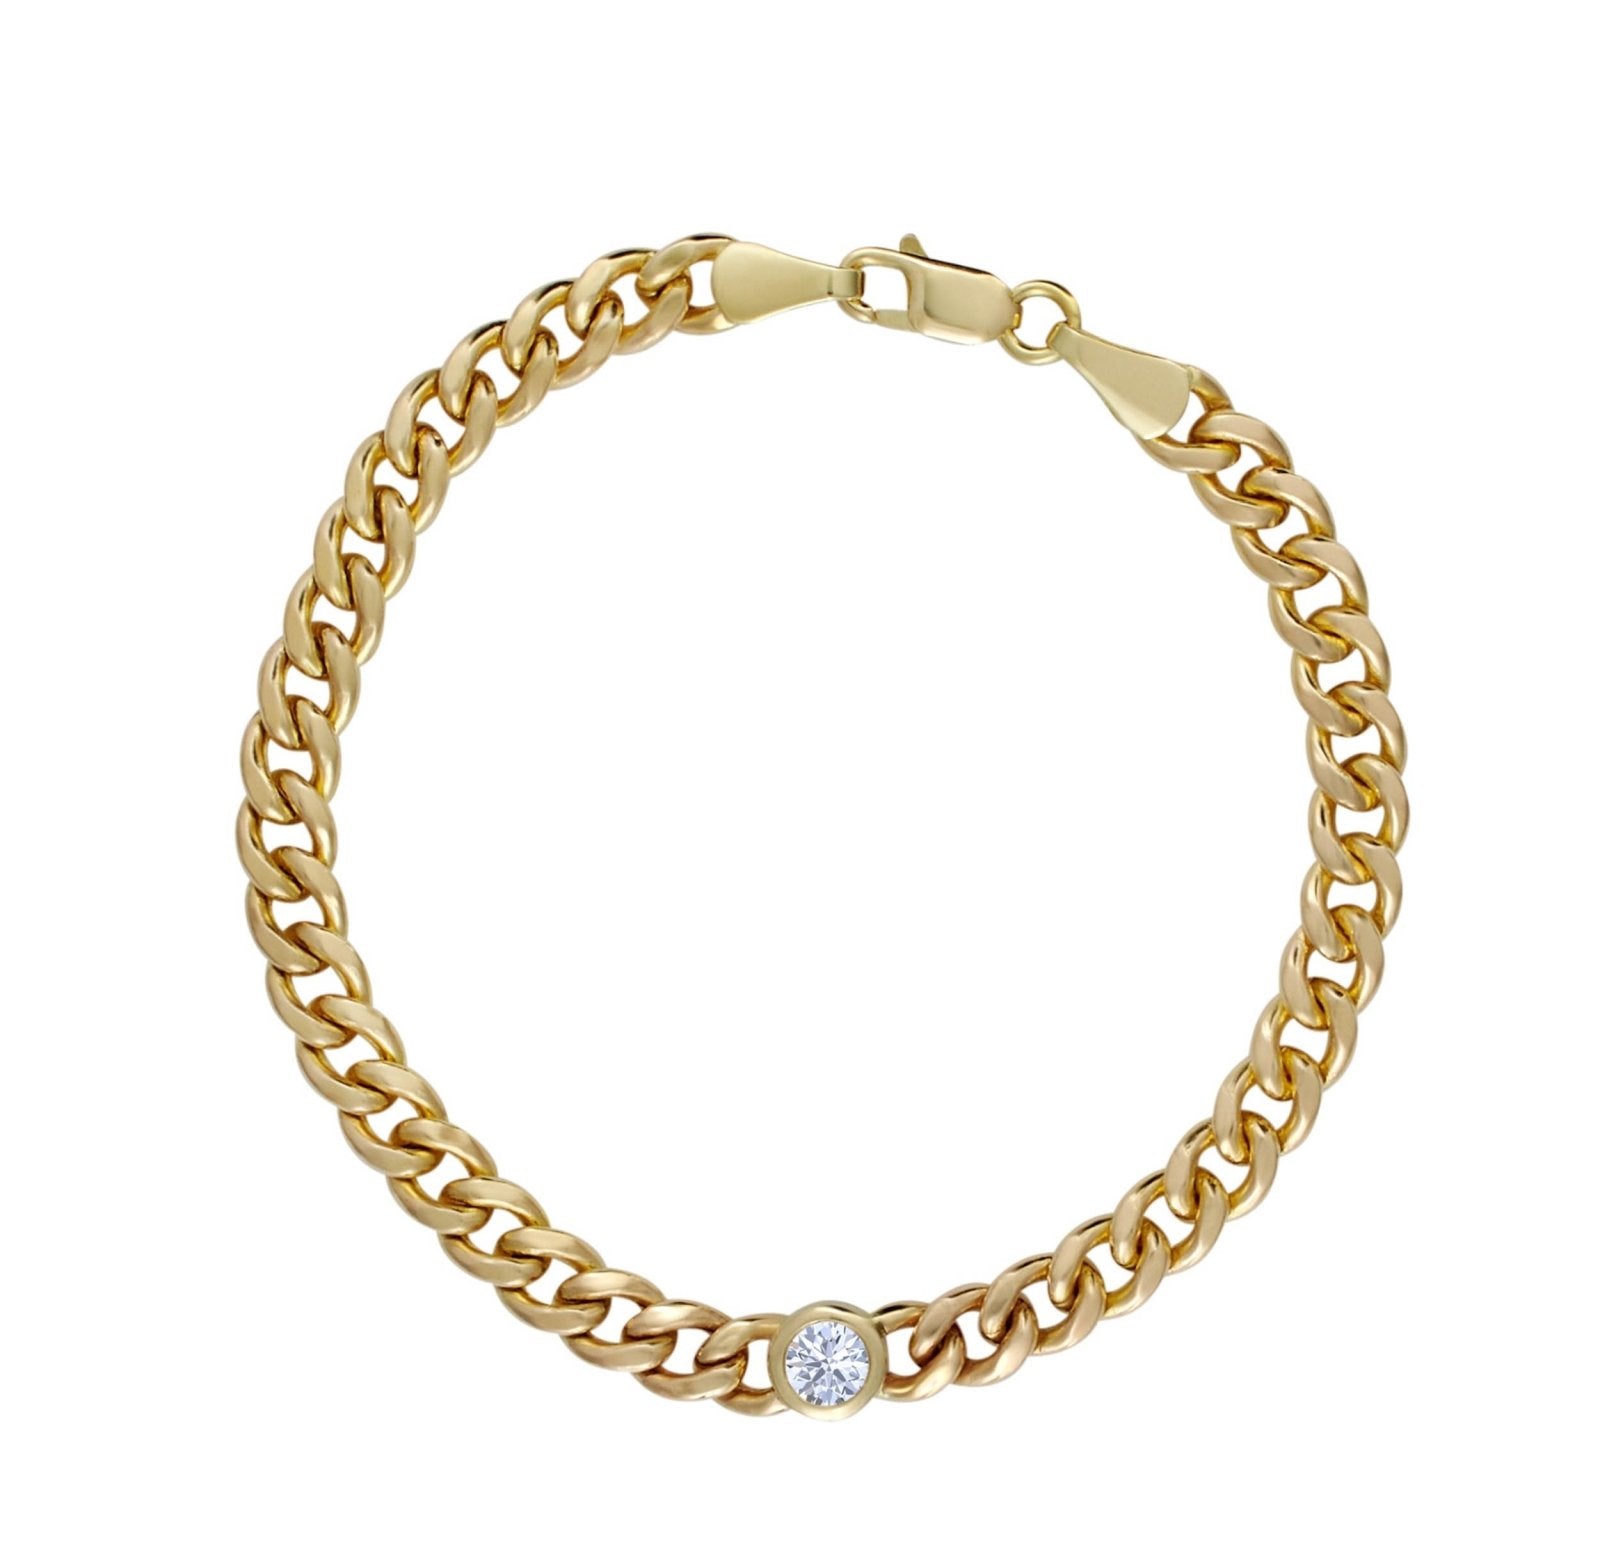 Chain Bracelet with Diamond - Alexis Jae Jewelry